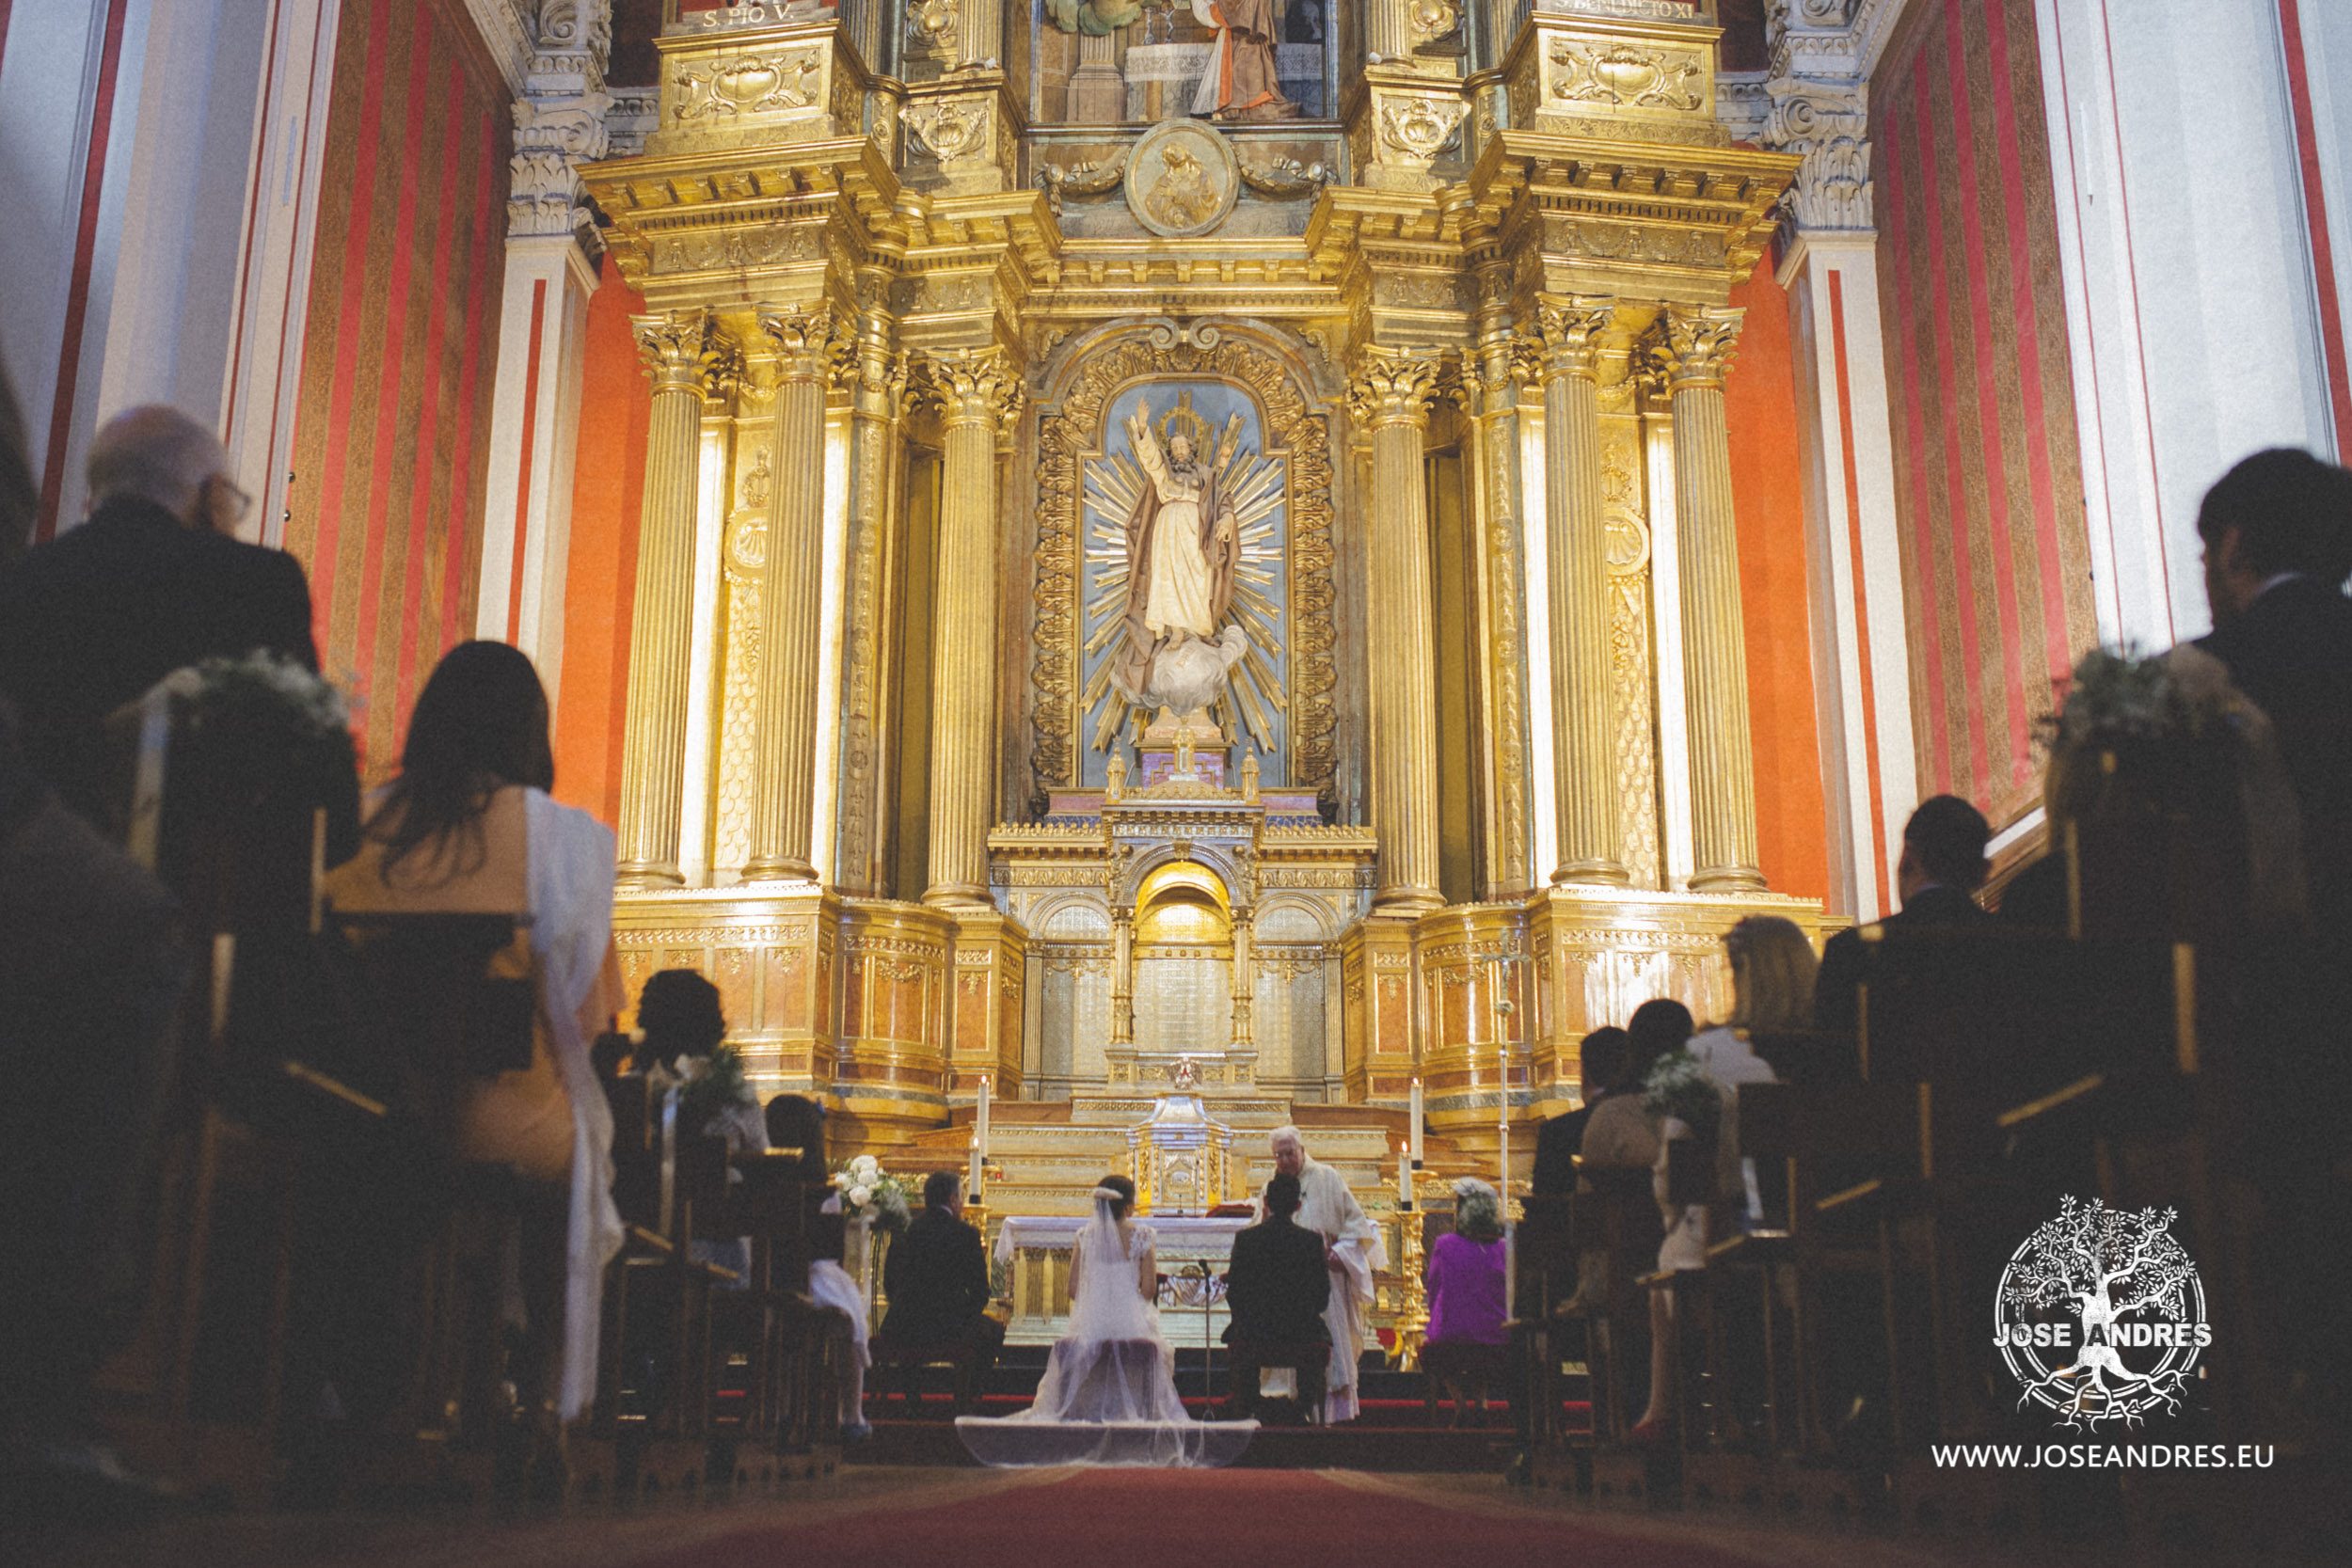 Boda en Soto de Bruil, ceremonia en Santiago el Mayor, Jose Andres fotografía y cine documental de bodas